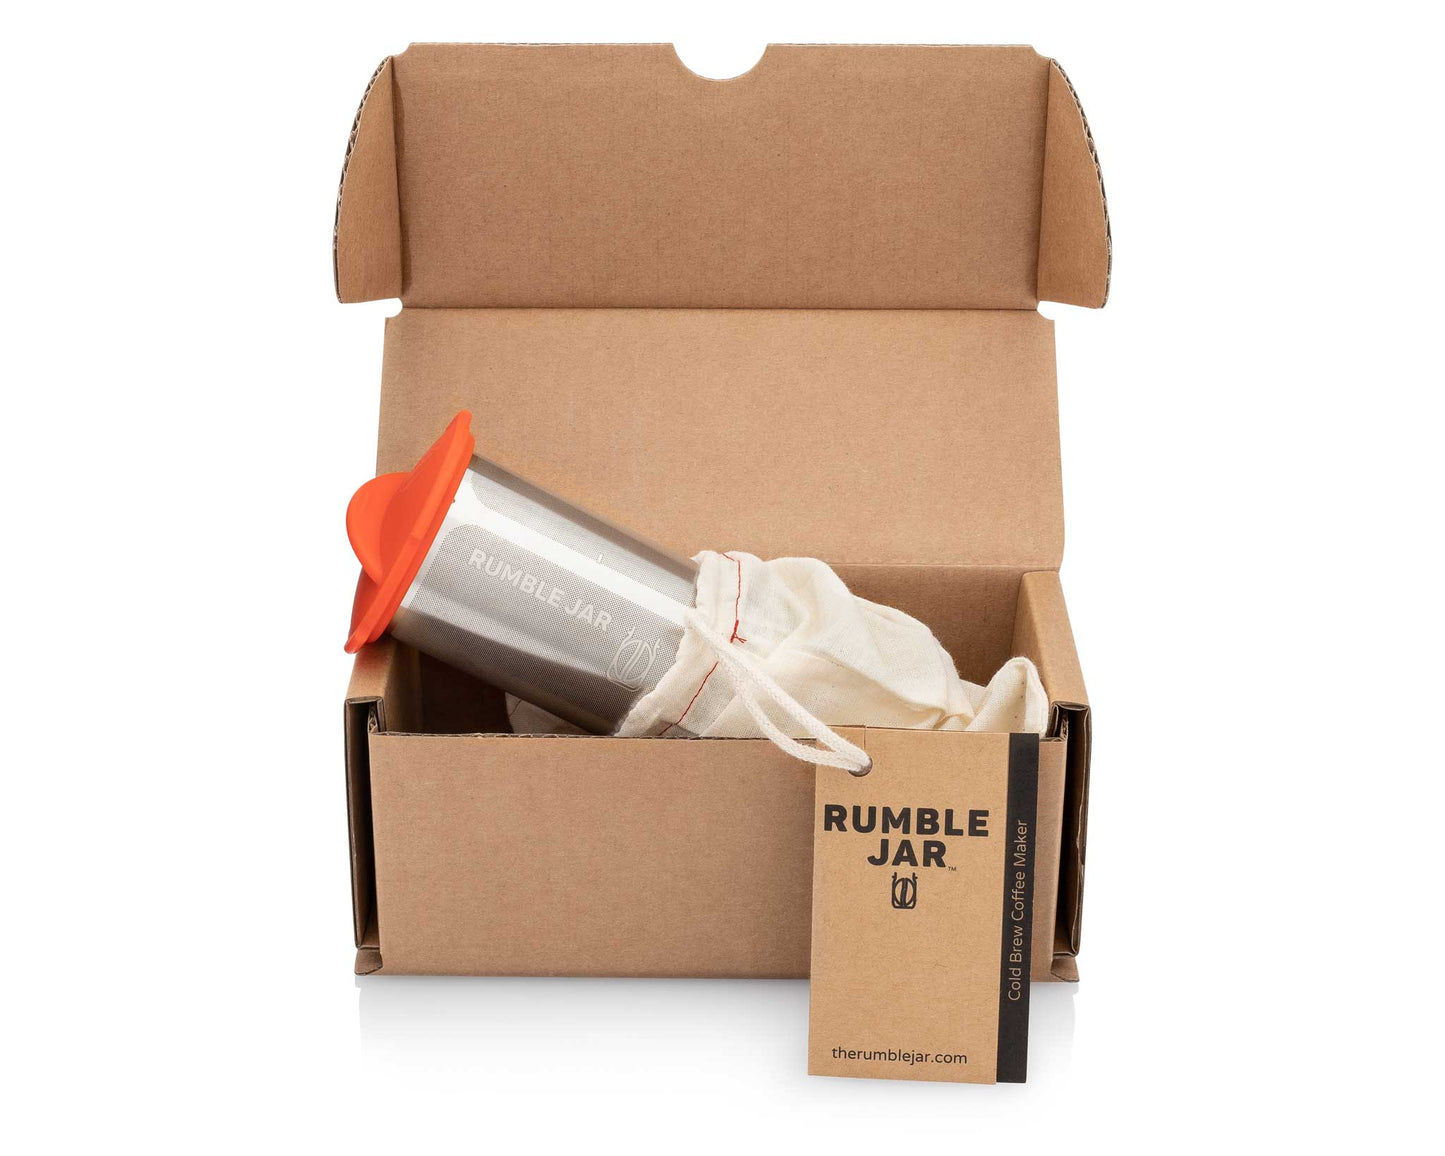 32oz Rumble Jar filter in box